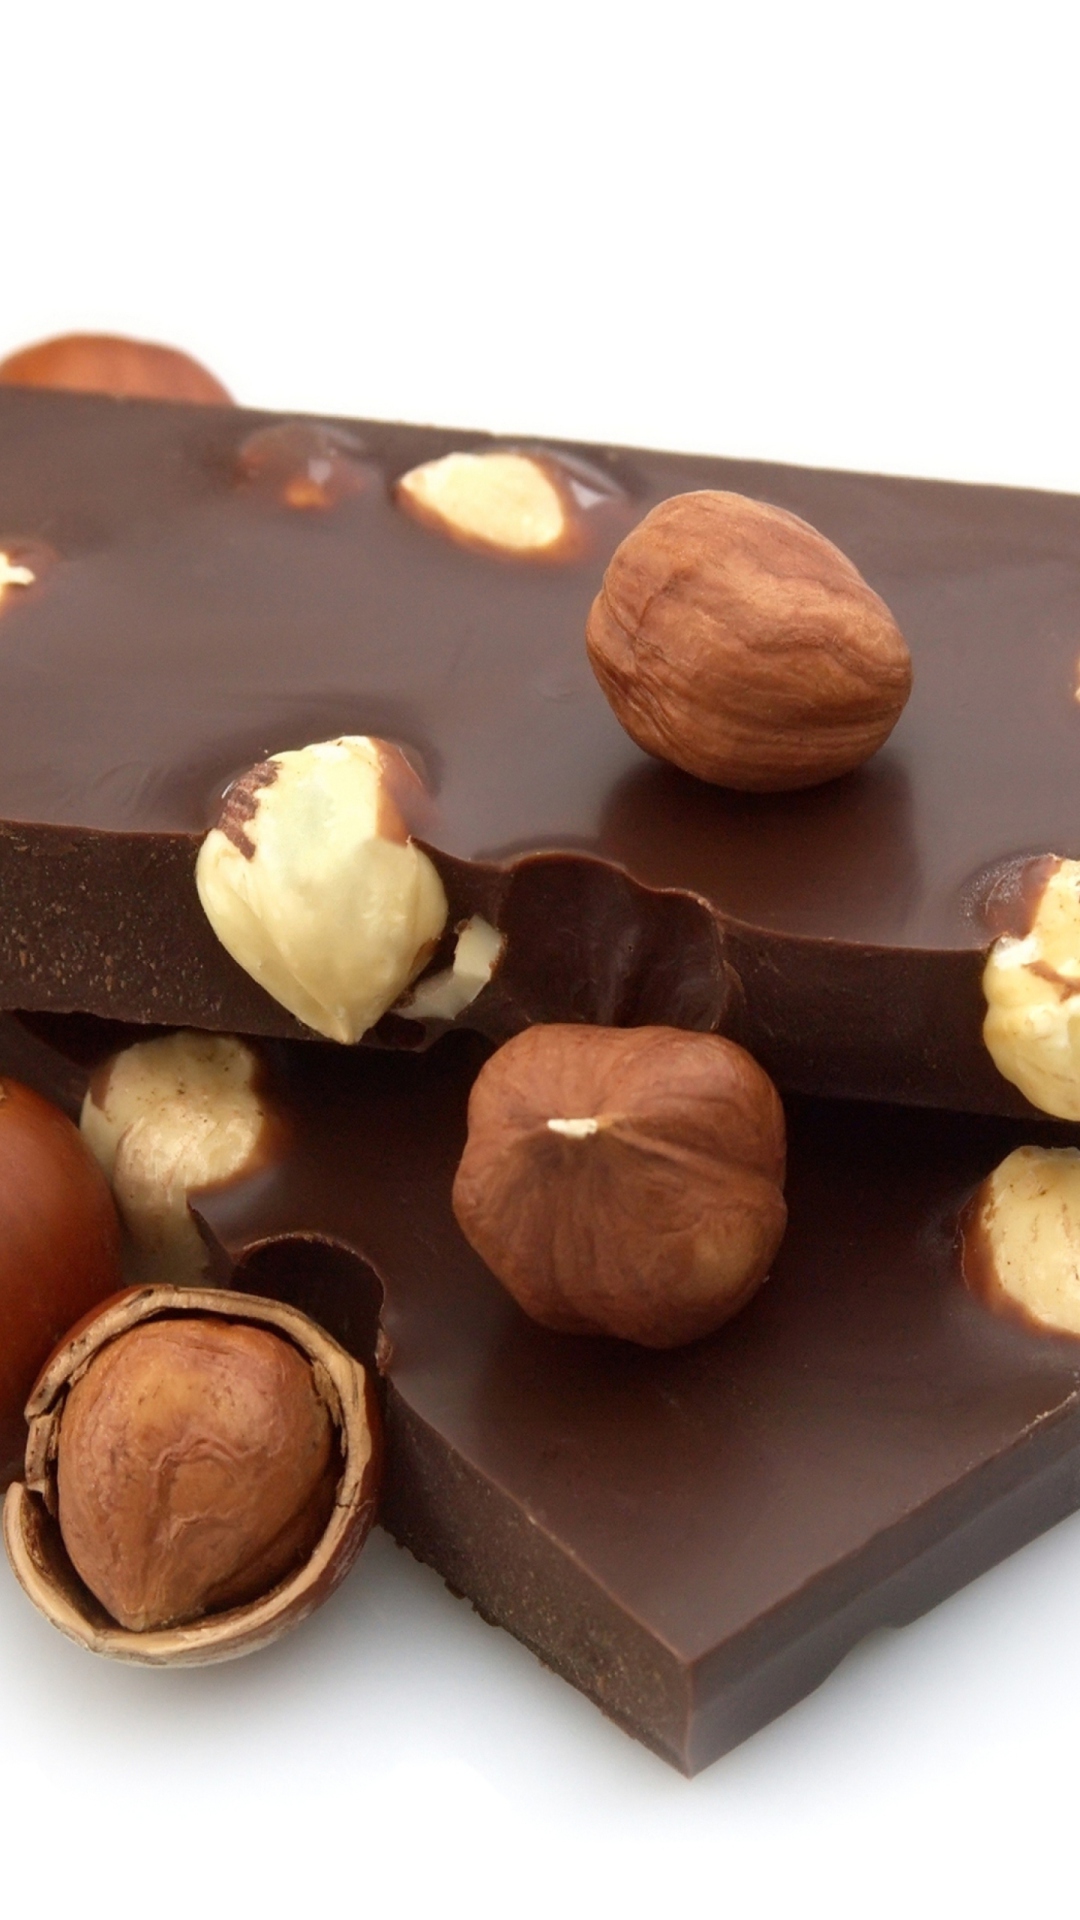 Sfondi Chocolate With Hazelnuts 1080x1920